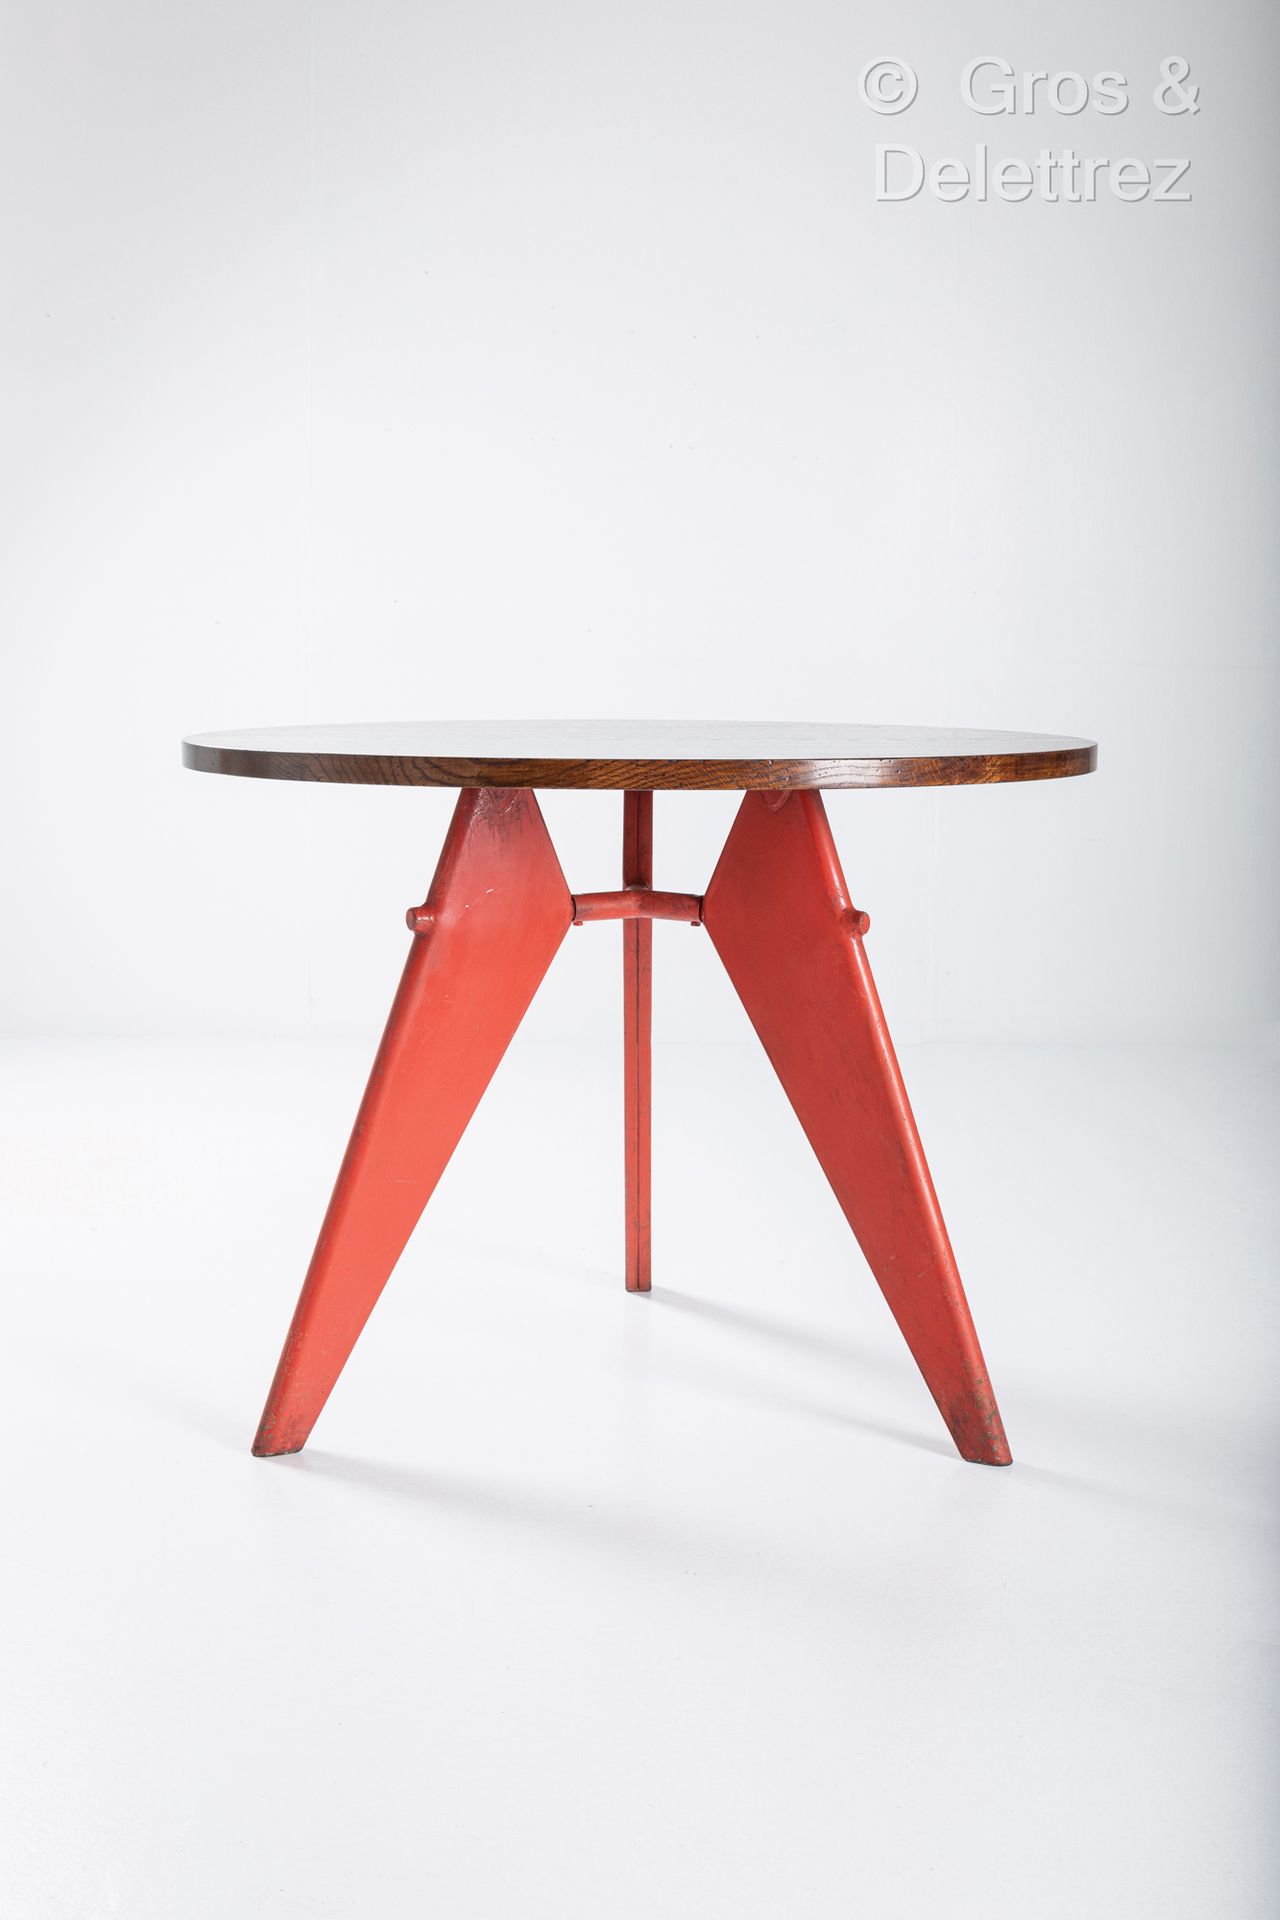 Null 让-普罗维 (1901-1984)
桌子，圆形橡木桌面，红色漆面金属的三脚架底座。
1952年左右设计。
高：71厘米/直径：95厘米

参考文献：彼&hellip;